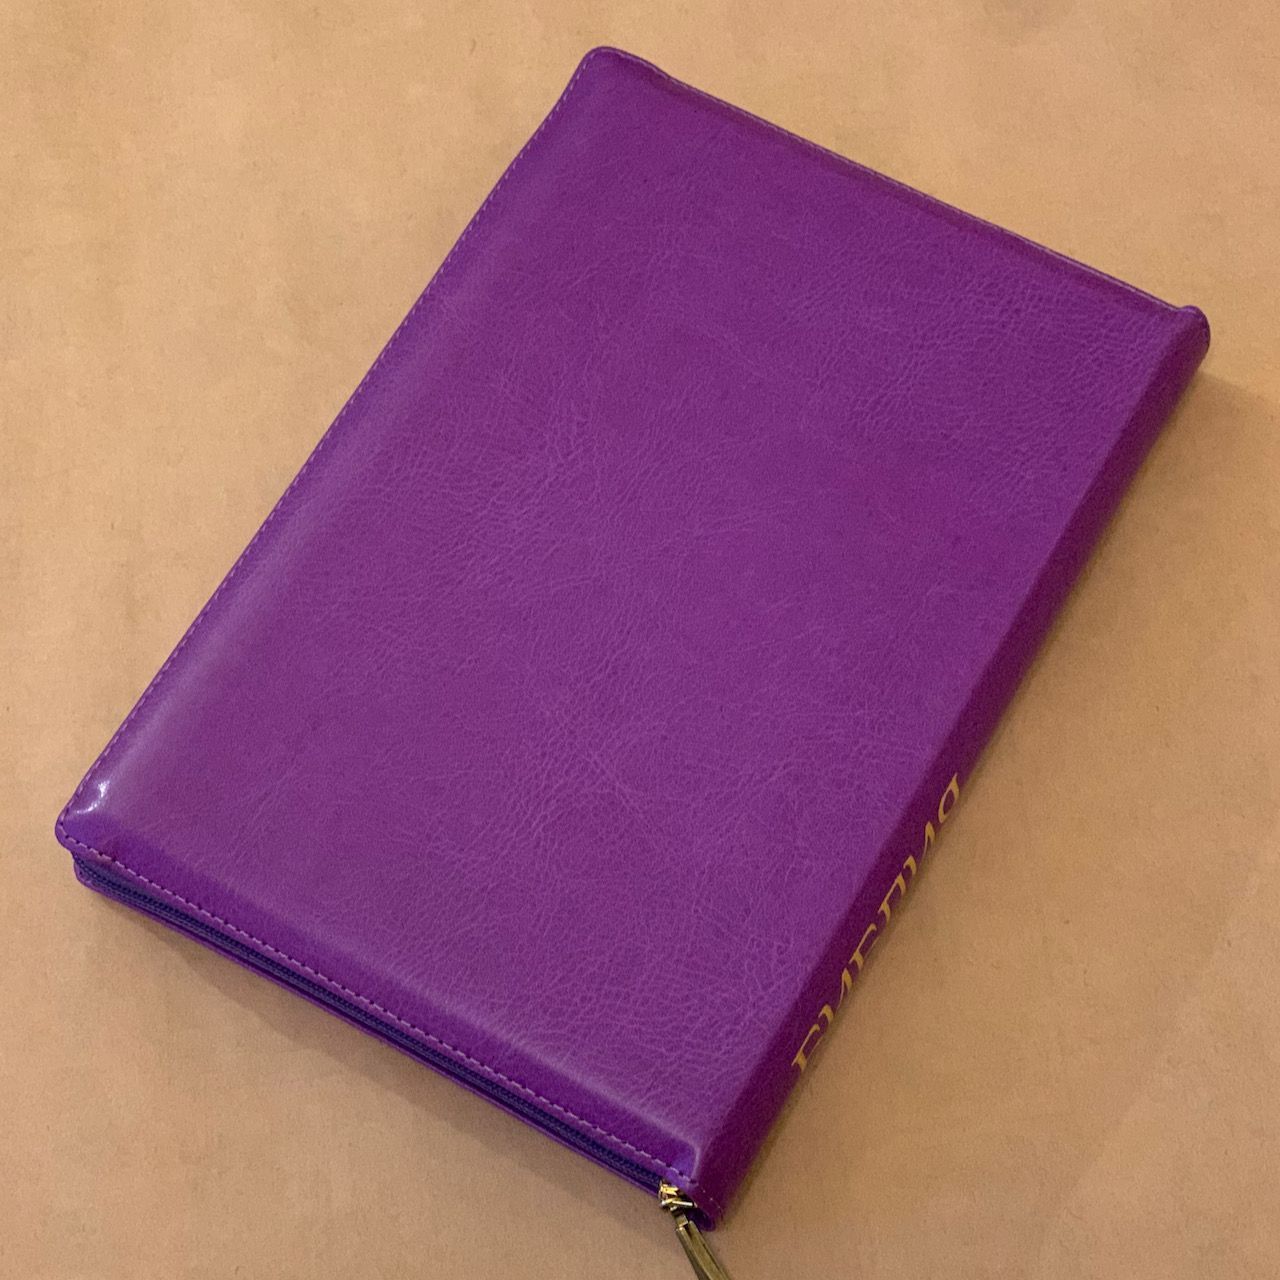 Библия 077zti формат, переплет из искусственной кожи на молнии с индексами, цвет светло-фиолетовый, большой формат, 180*260 мм, цветные карты, крупный шрифт